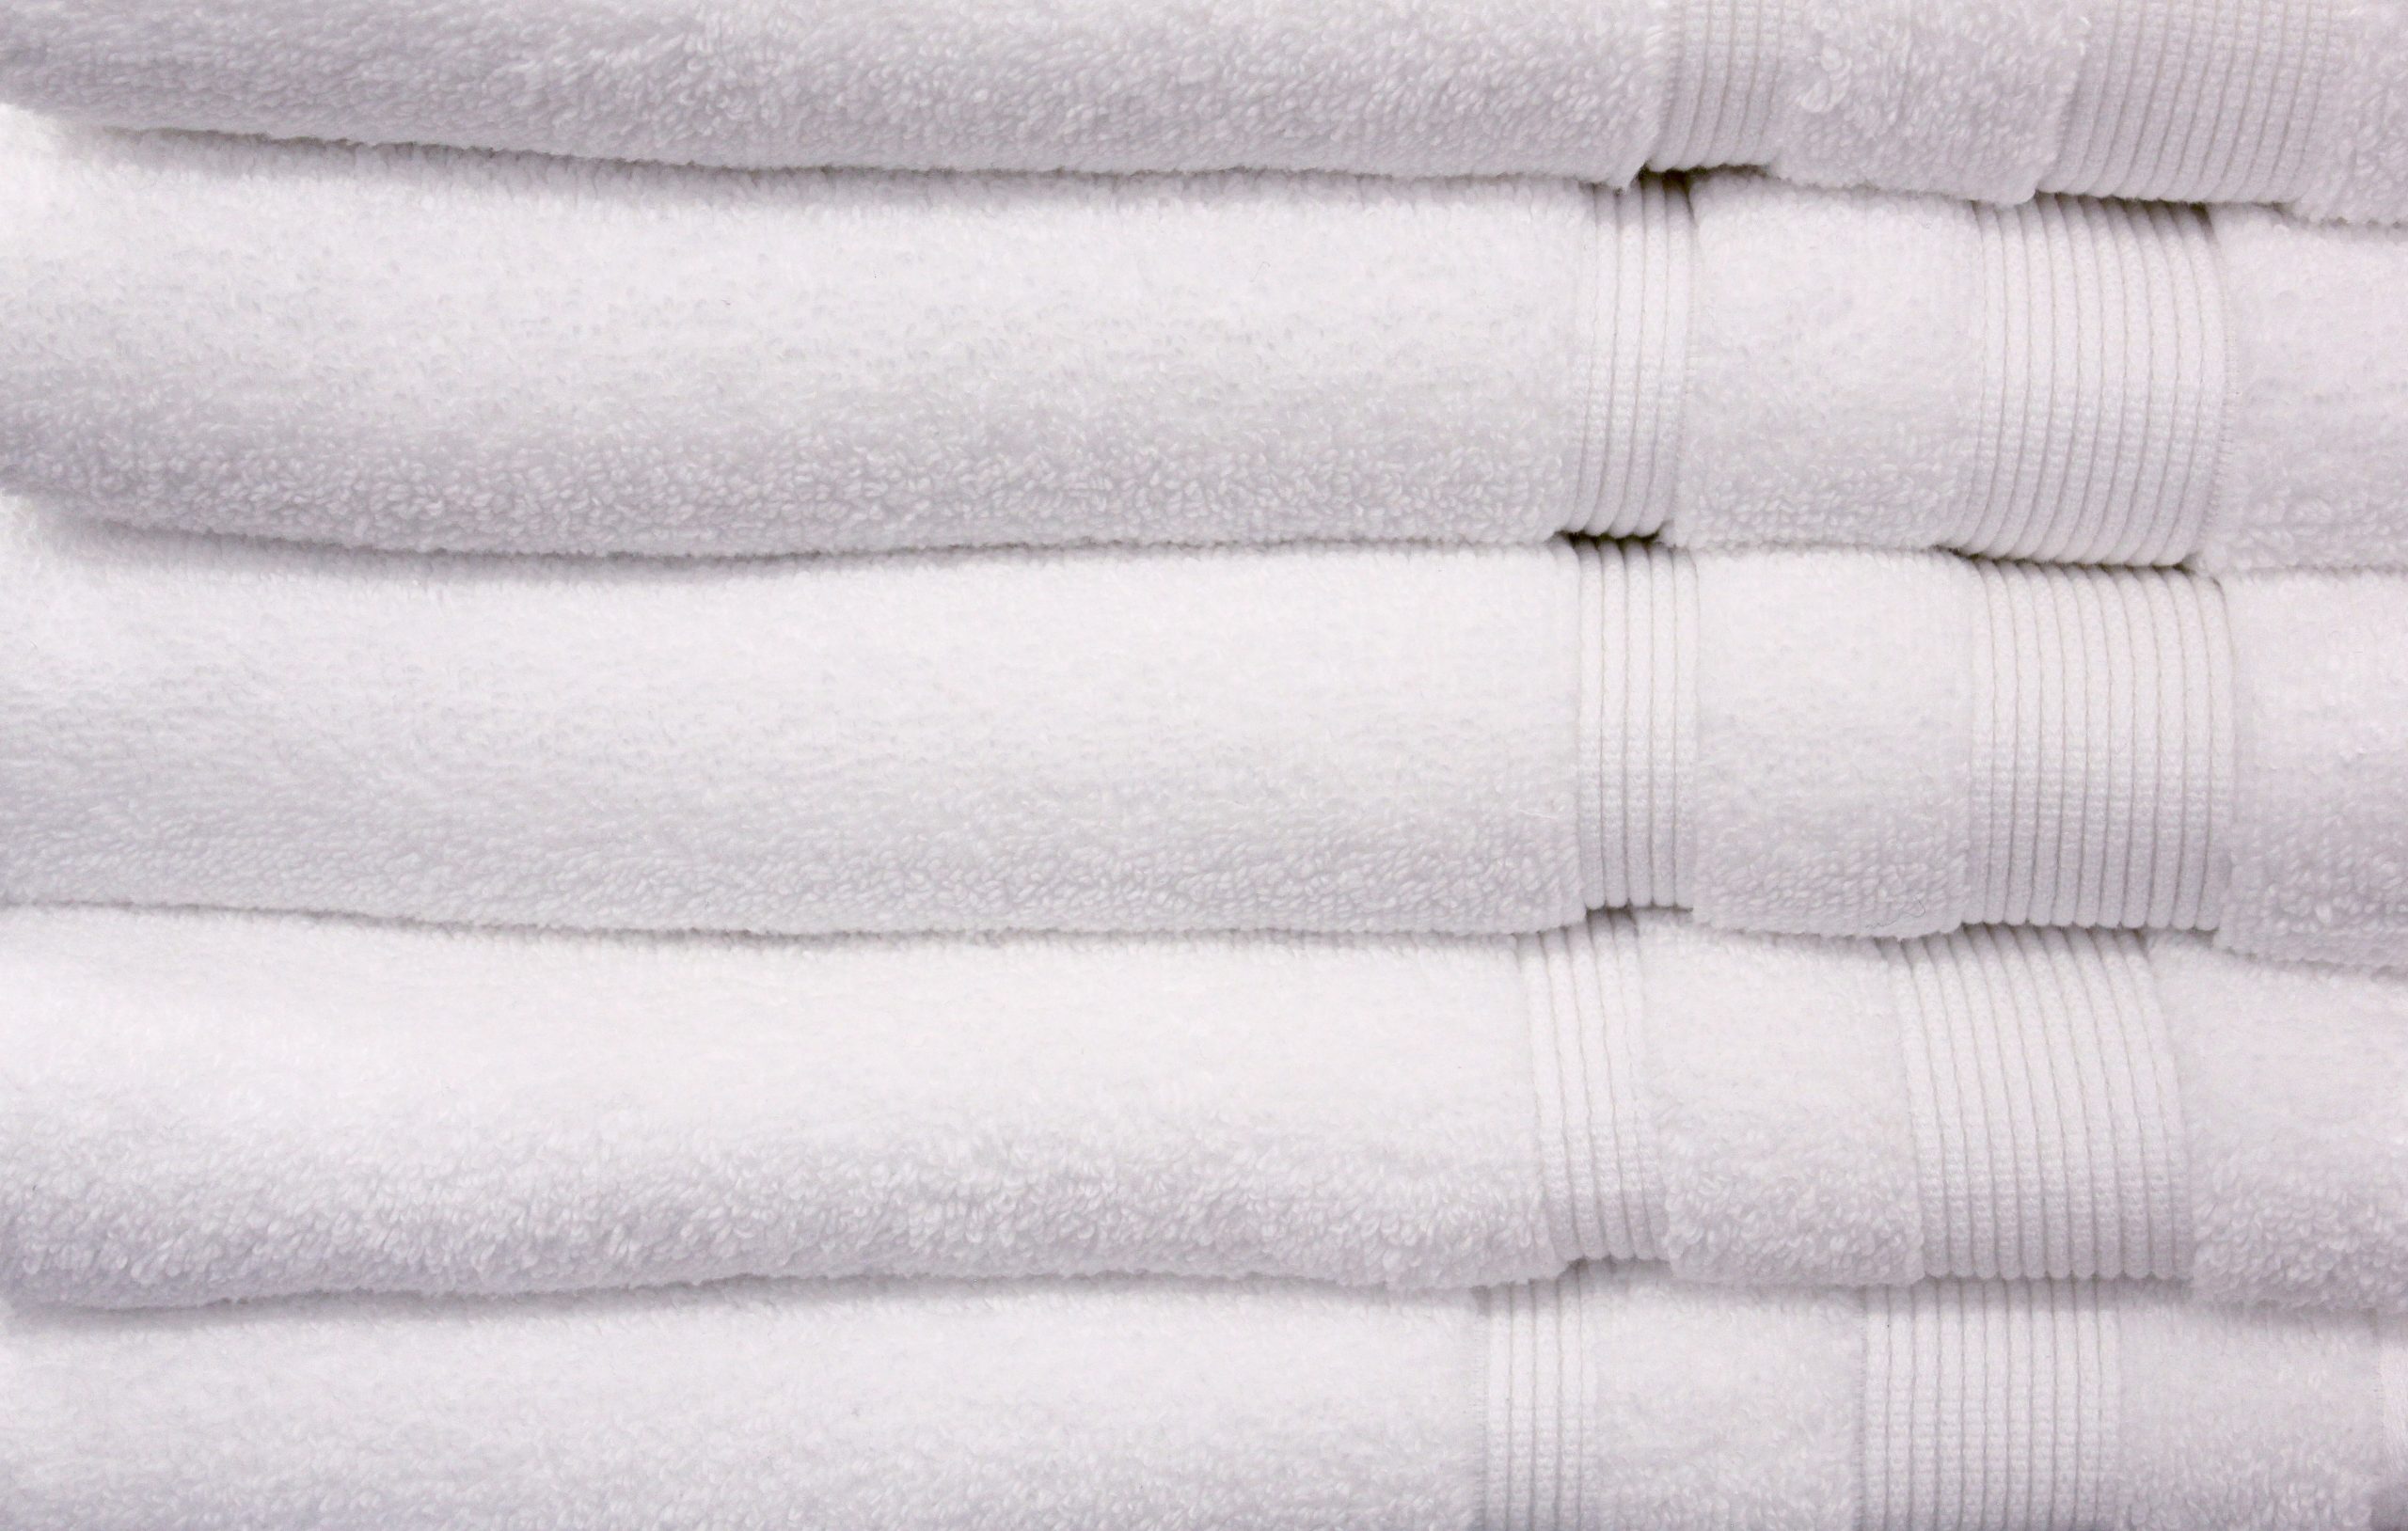 Best Linen Hand Towel